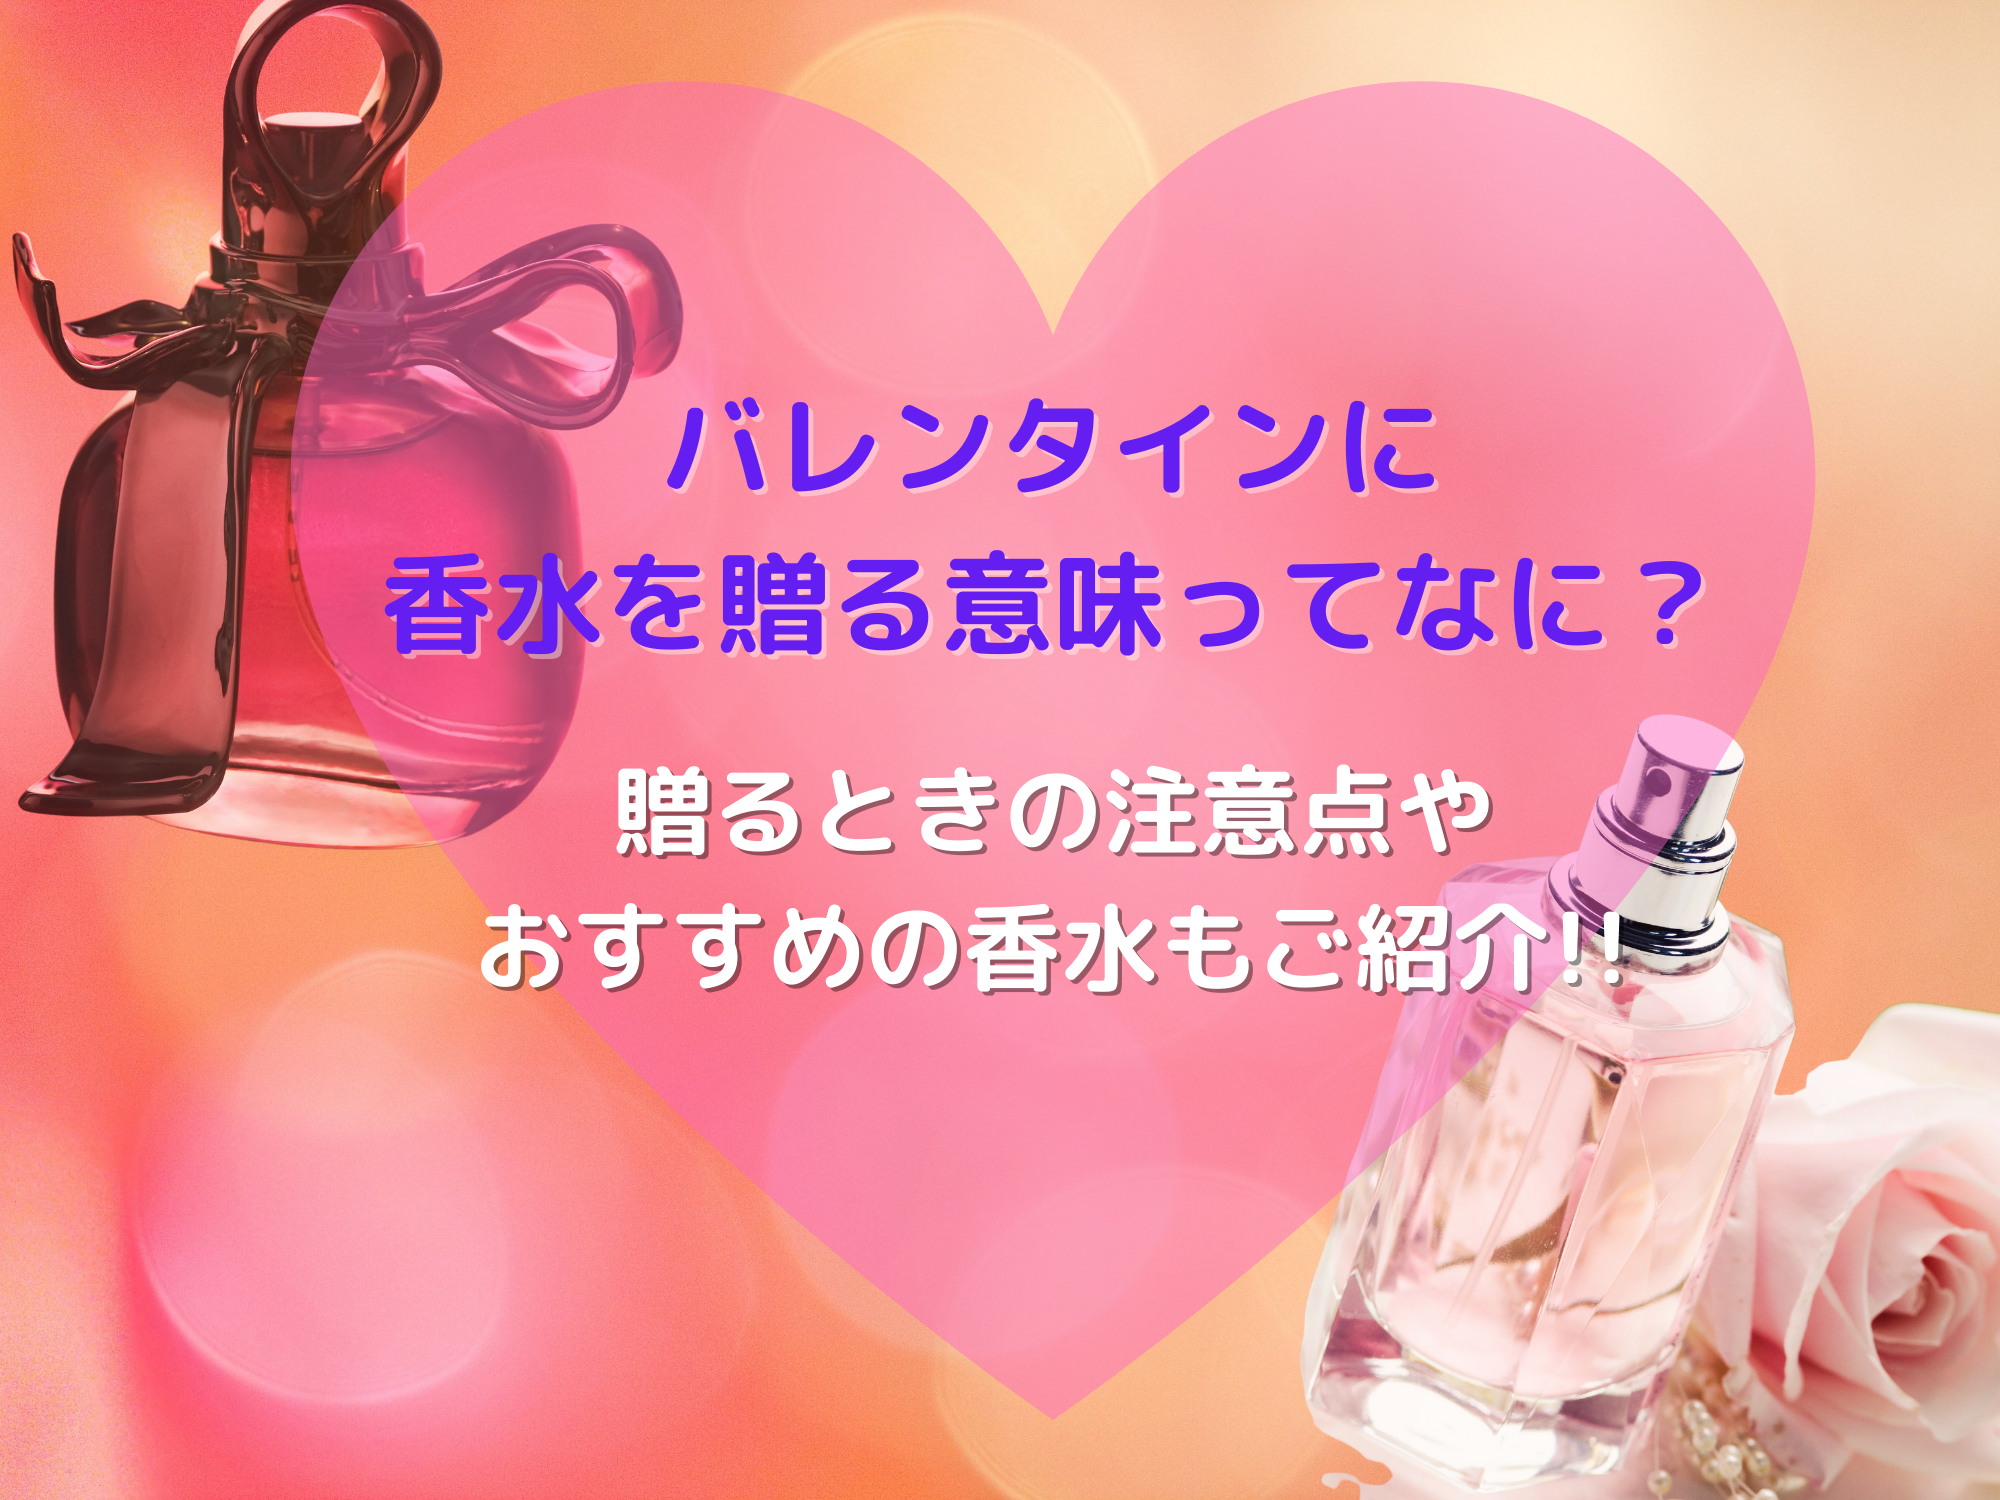 バレンタインに香水を贈る意味とは?注意点やおすすめの香水もご紹介! | 那須塩原 貸別荘を営む森のもかさん